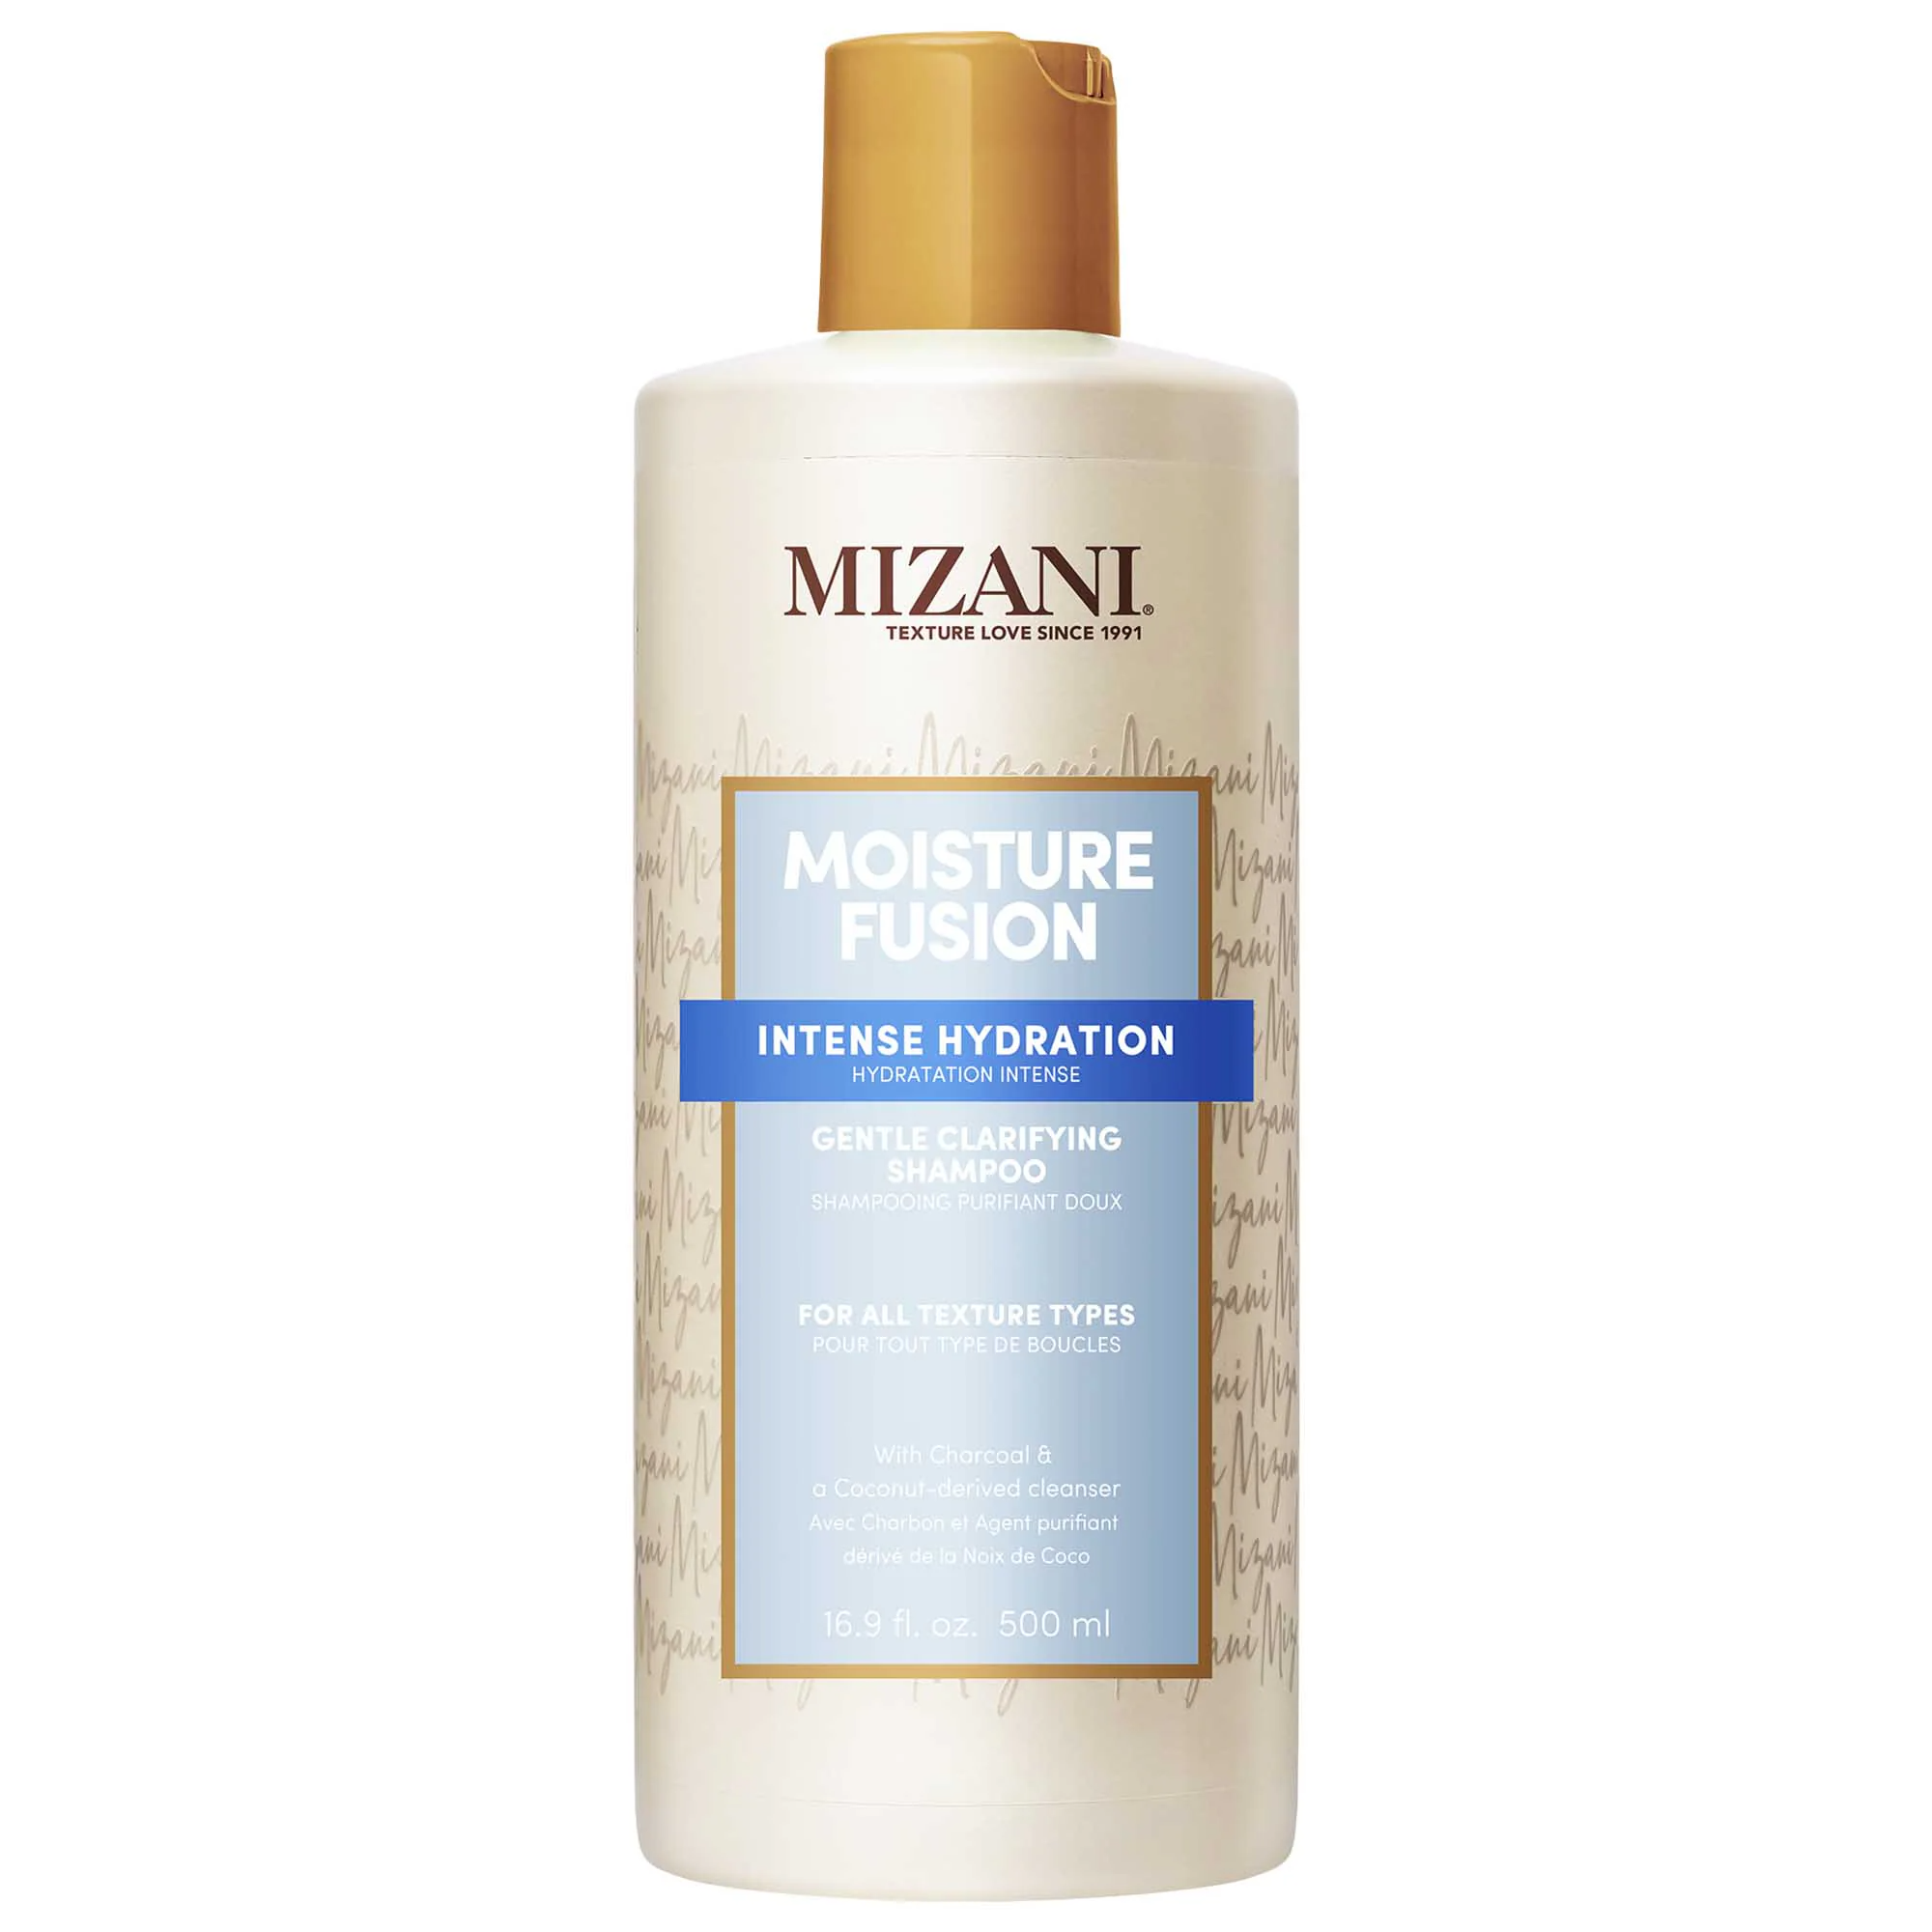 Mizani Moisture Fusion Intense Hydration Gentle Clarifying Shampoo / 16.9OZ